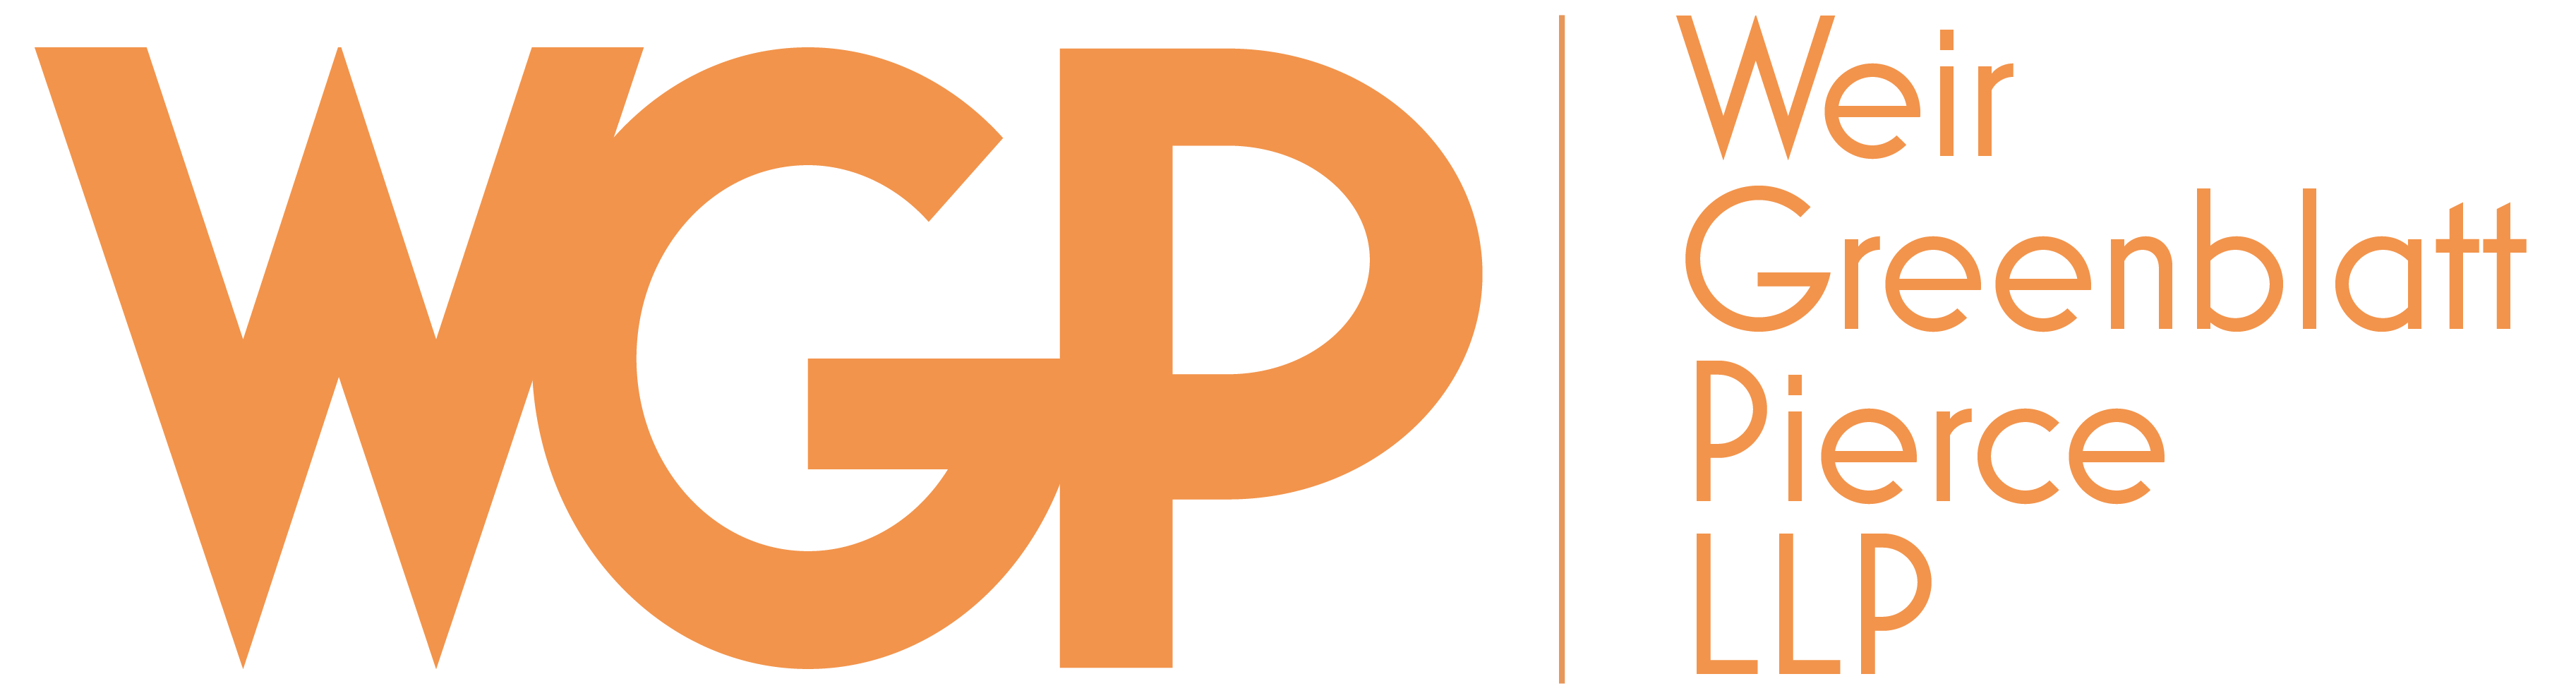 weir greenblatt pierce law firm logo in orange